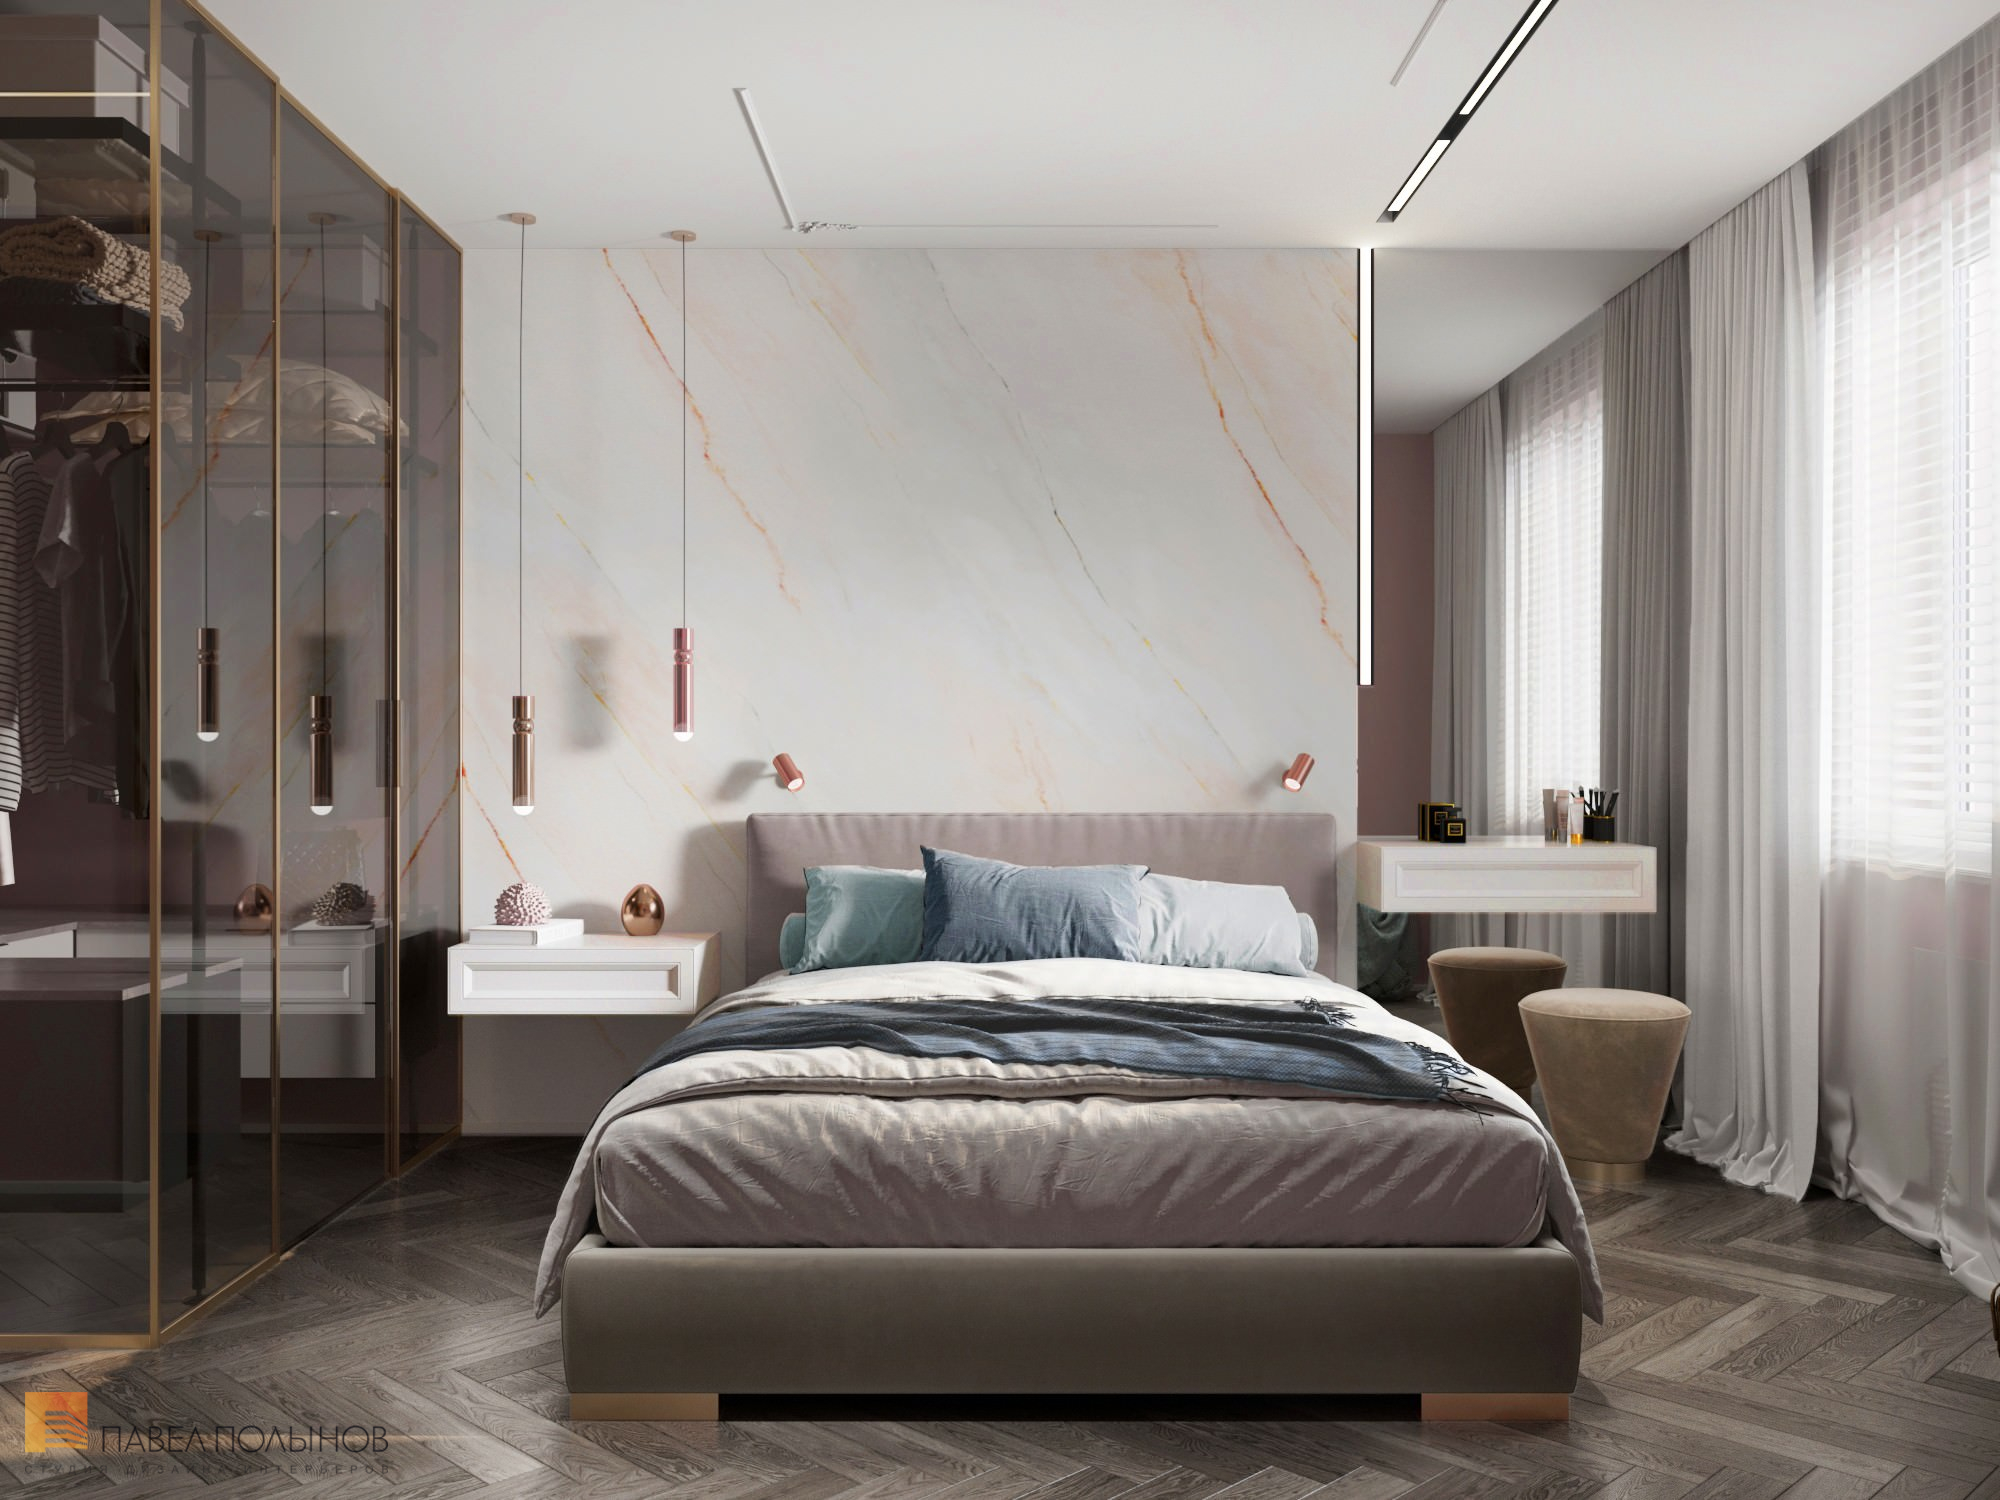 Фото дизайн спальни из проекта «Квартира в стиле ар-деко, ЖК «Skandi Klubb», 75 кв.м»